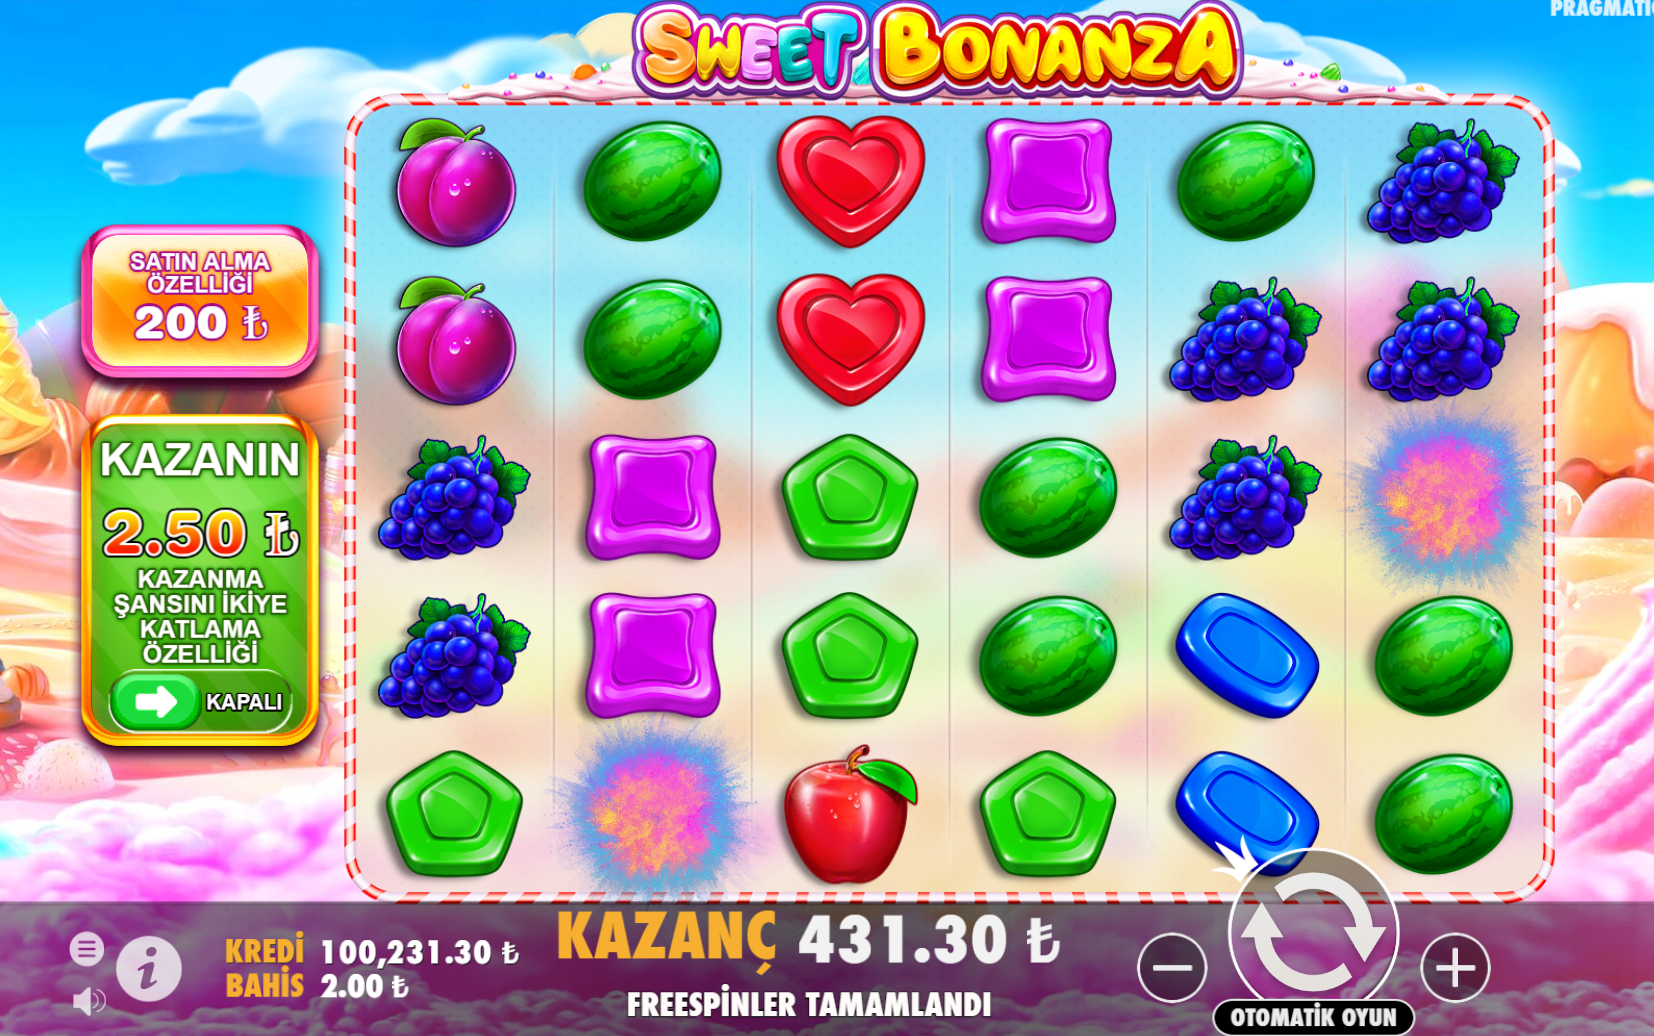 Sweet Bonanza Oyunu Nasıl Çalışır?